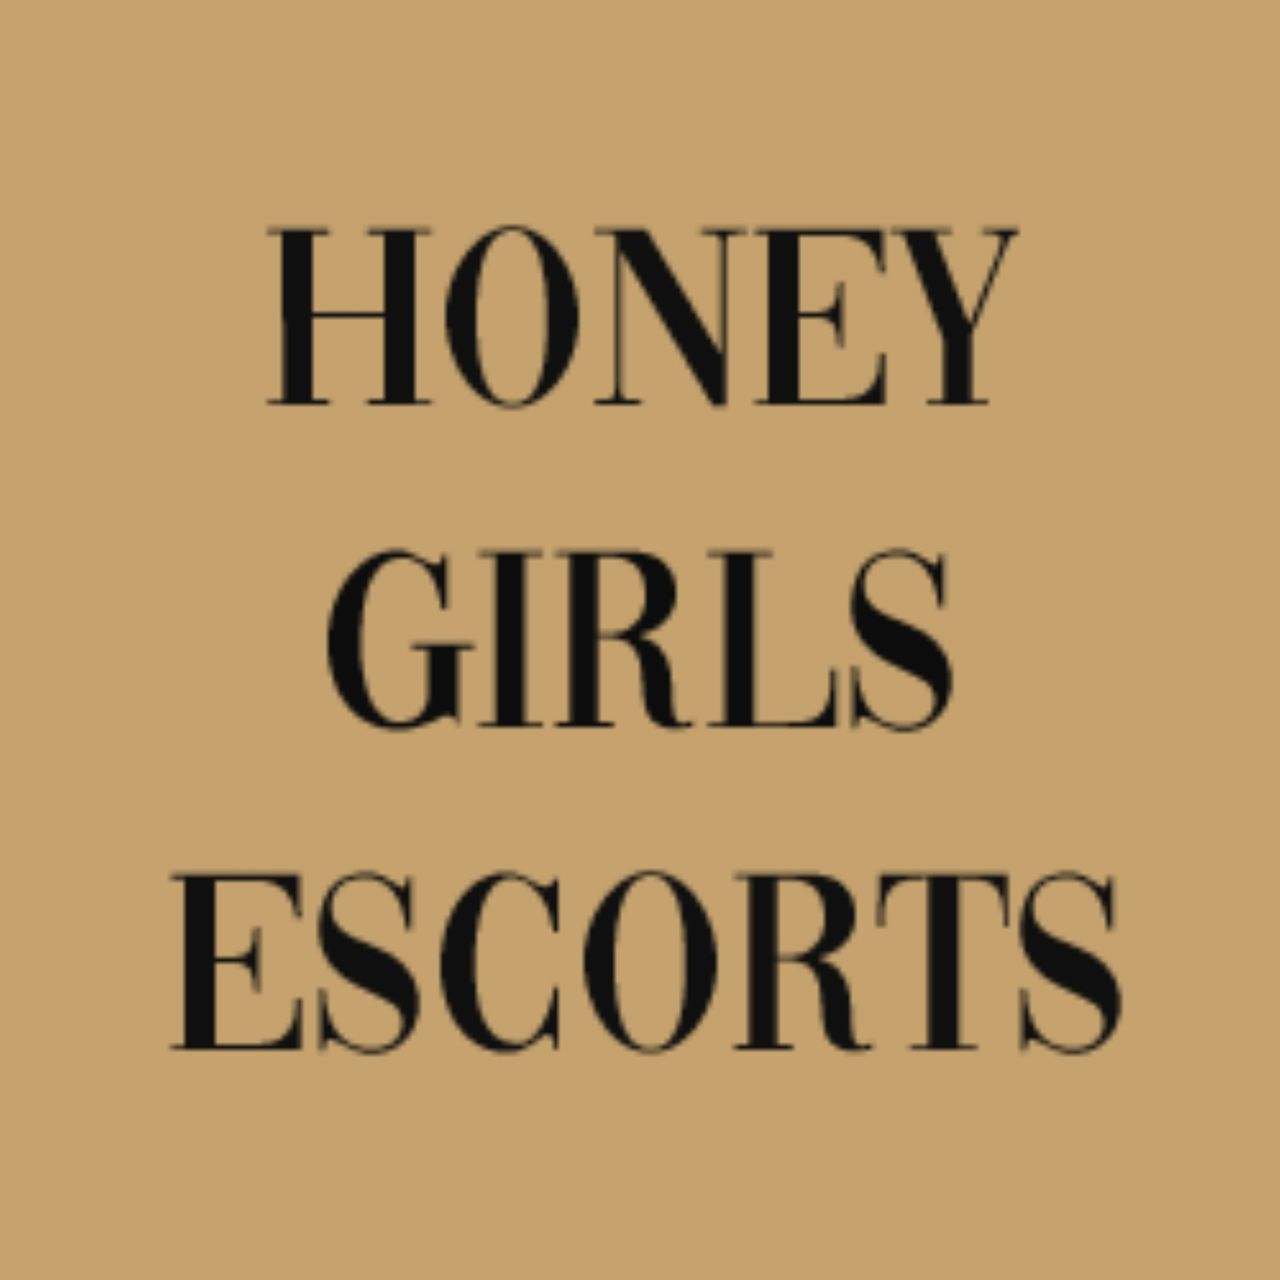 Honey Girls Escorts